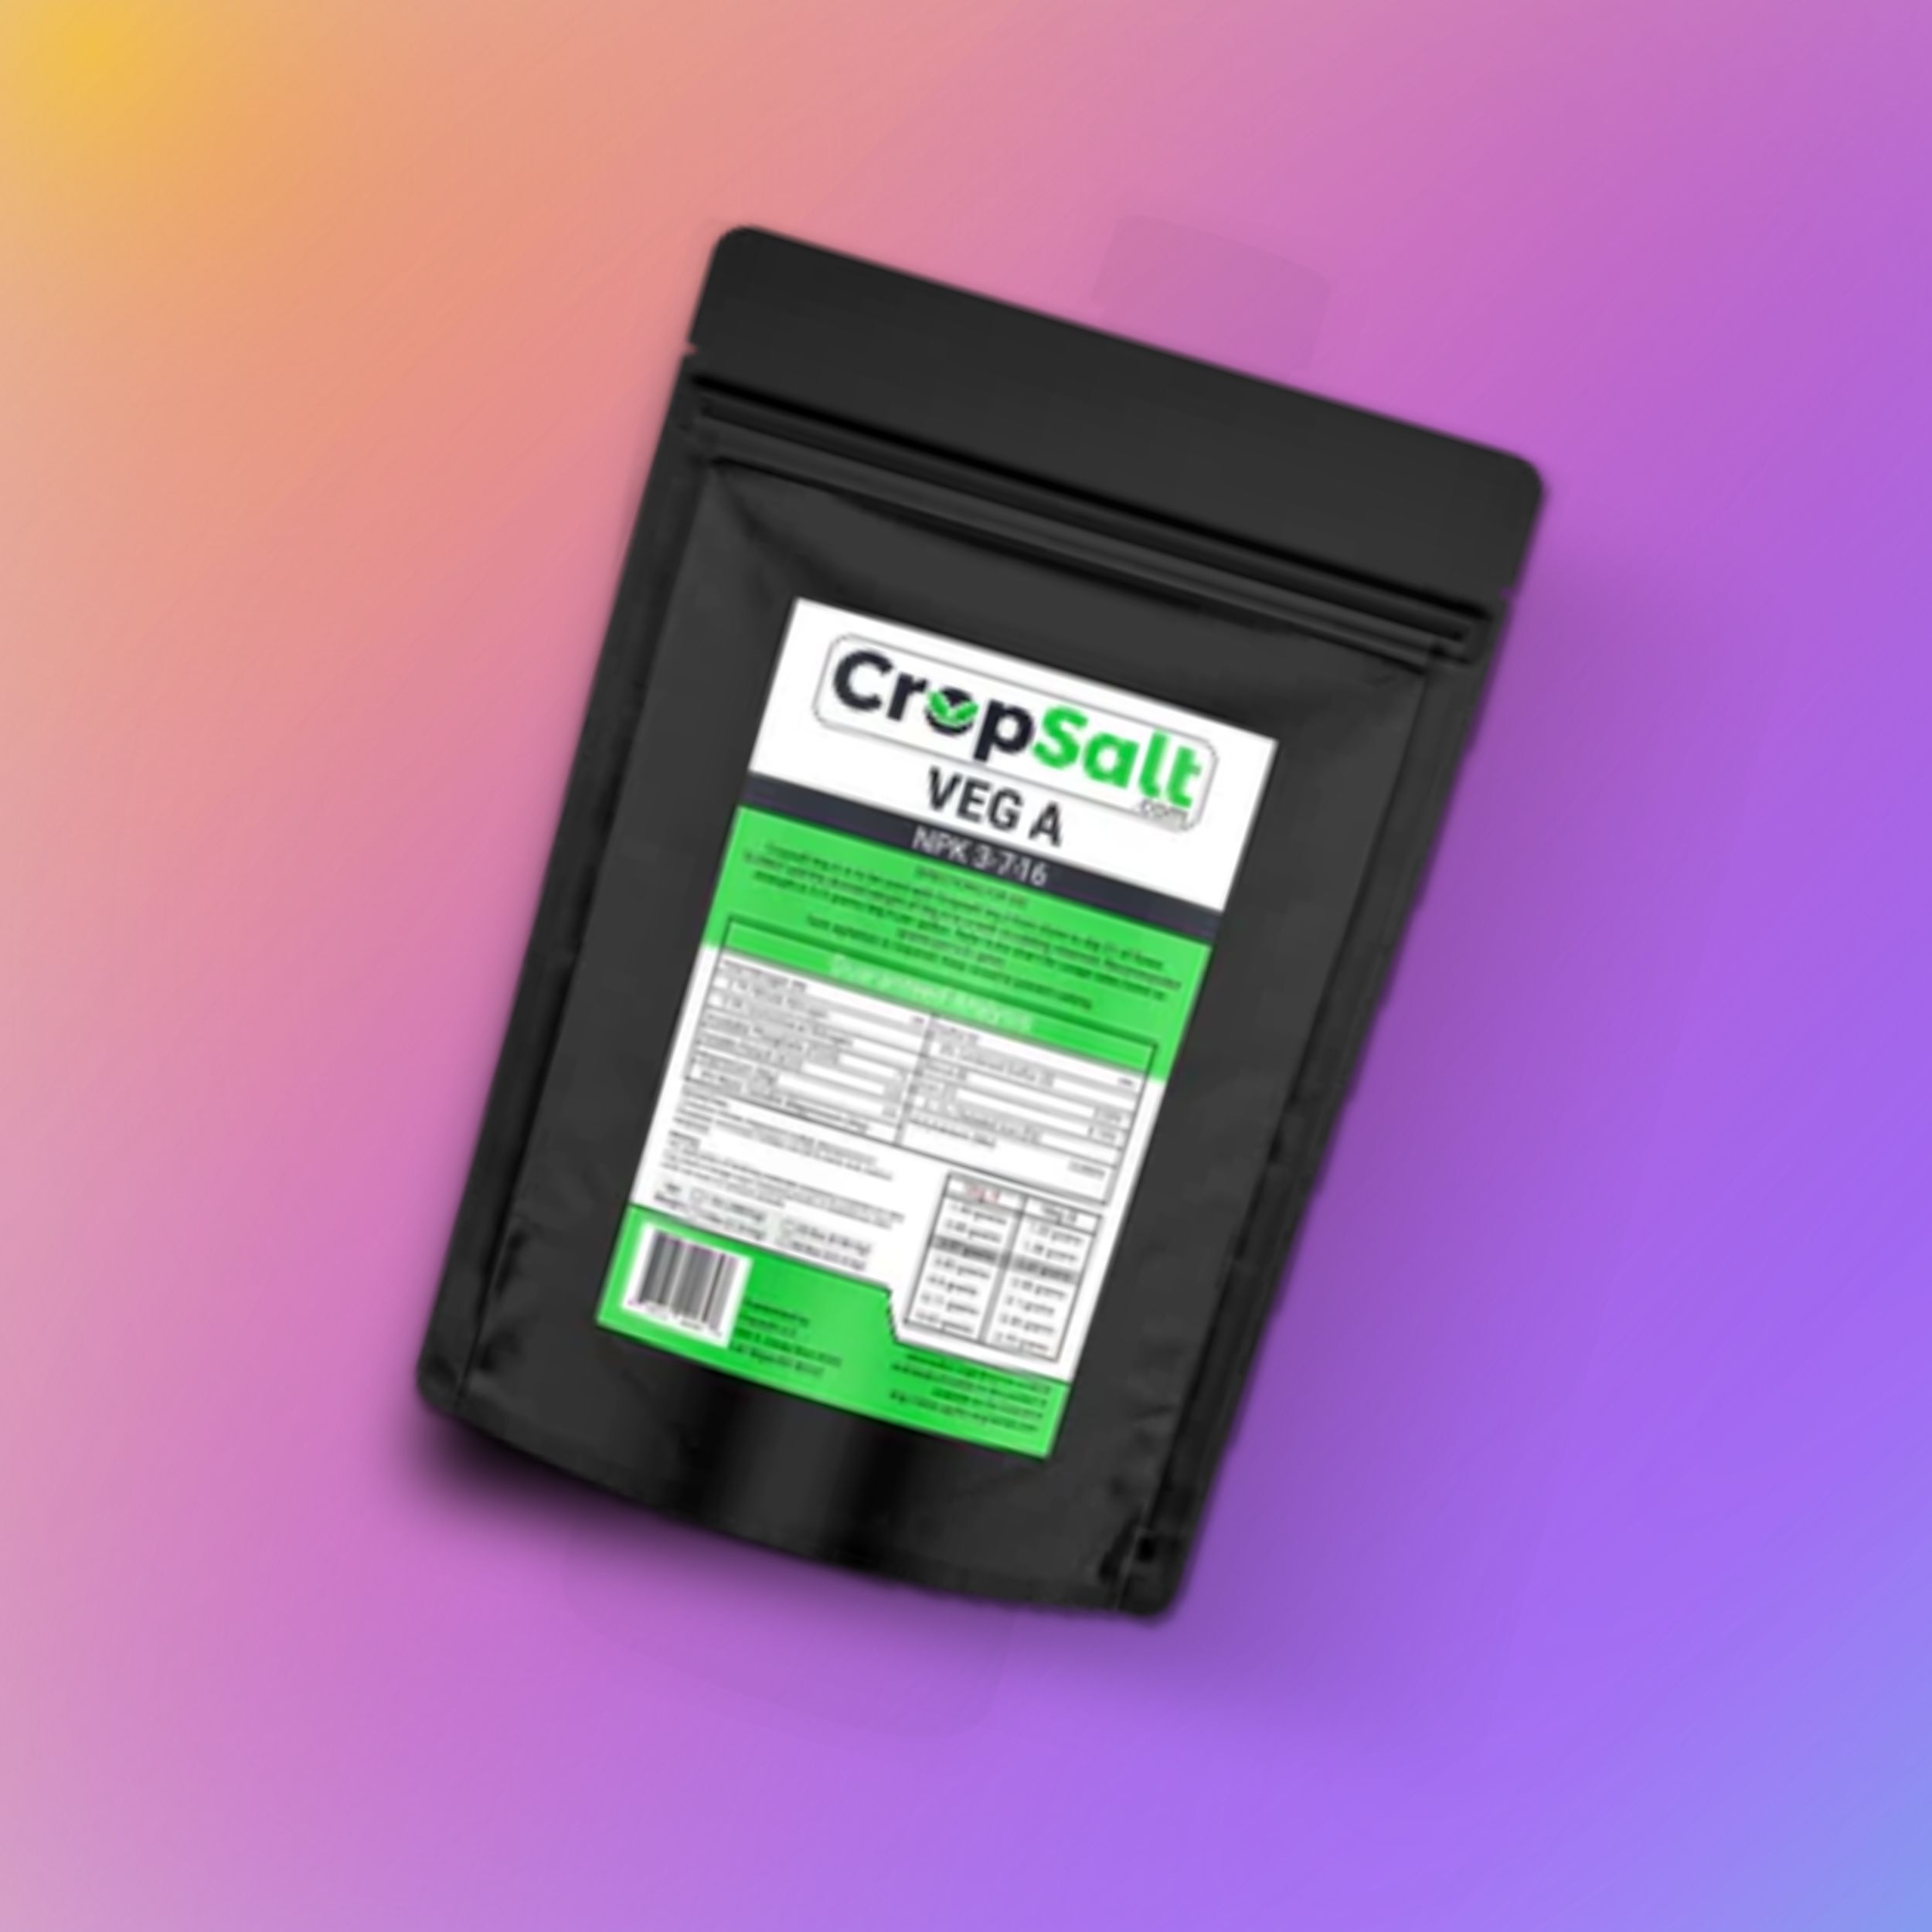 CropSalt Veg-A 1 Pound